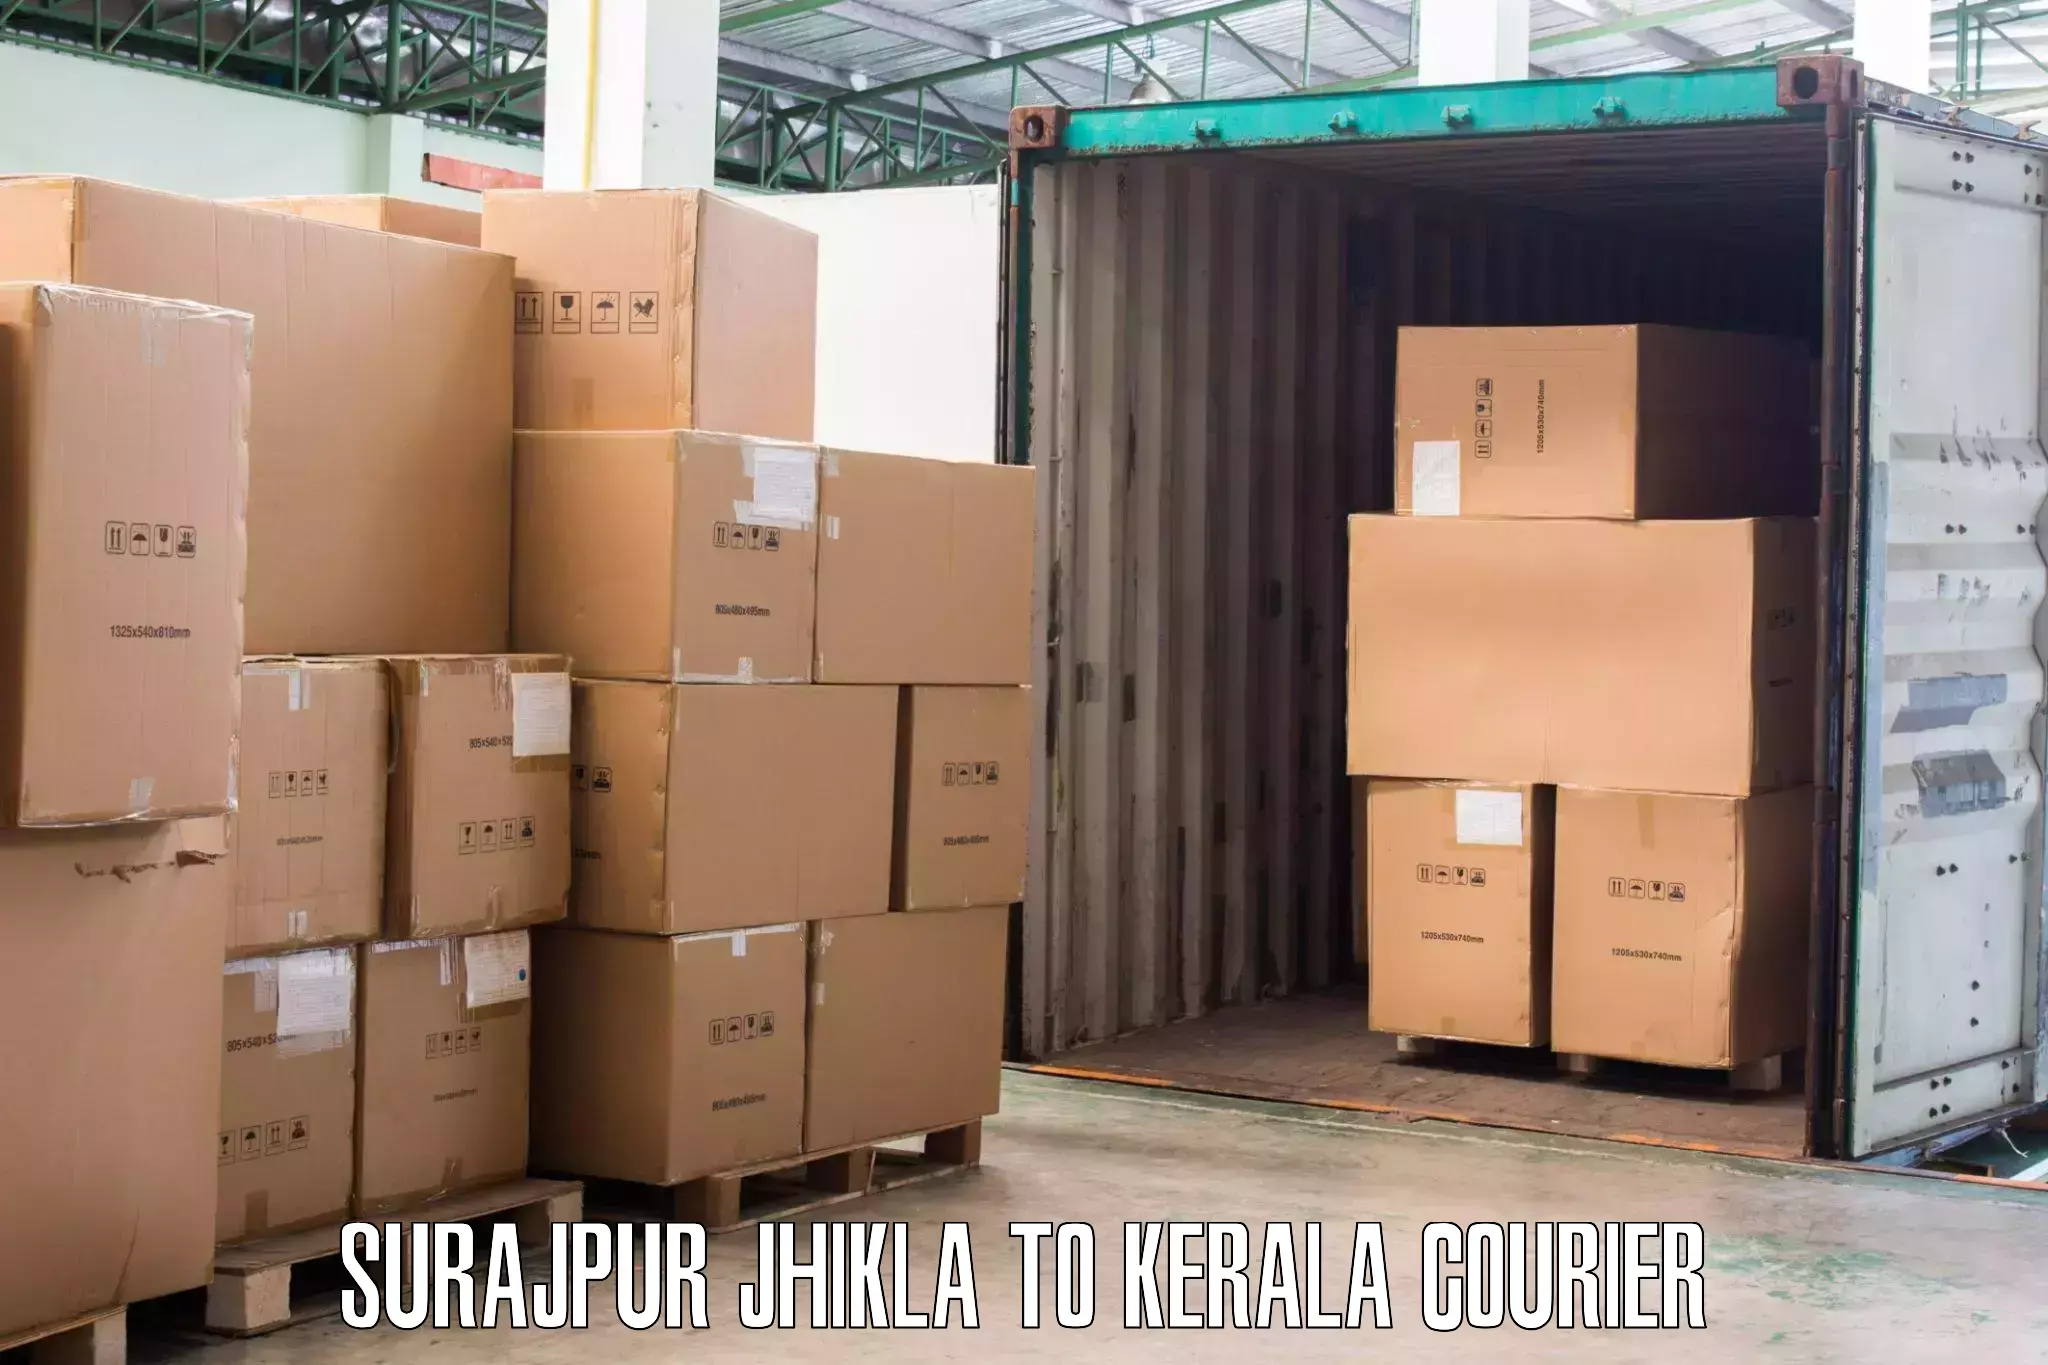 Professional furniture movers in Surajpur Jhikla to Kalluvathukkal